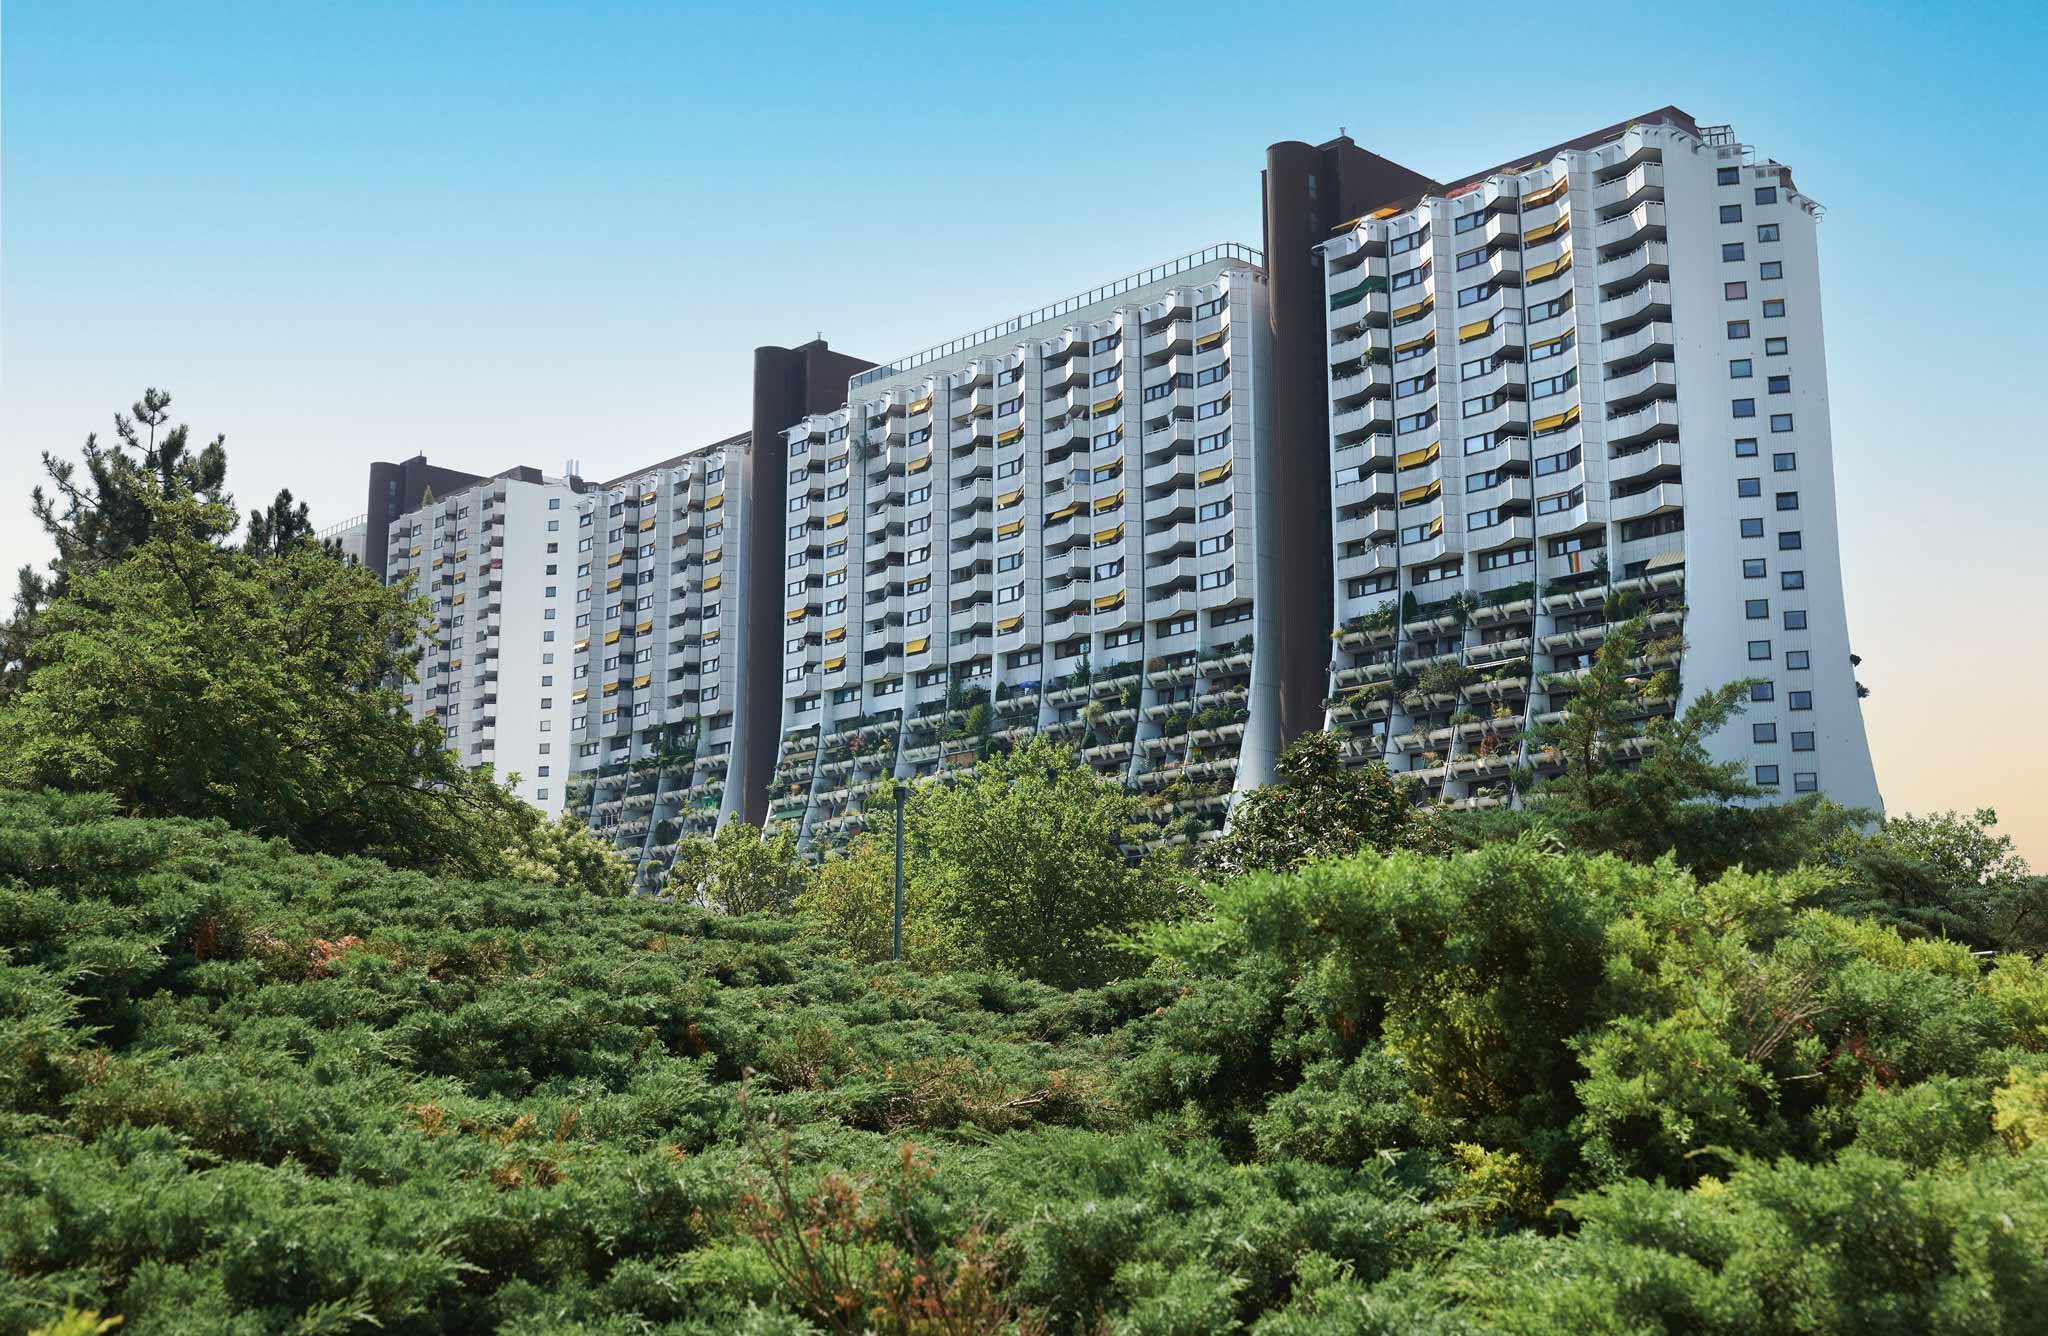 Der vom Architekten Harry Glück entworfene Wohnpark Alterlaa in Wien gilt als Vorzeigeprojekt für zeitgemäßen sozialen Wohnungsbau. Sowohl in der Architektur als auch funktional setzte Glück Maßstäbe – und das schon im Jahr 1973.